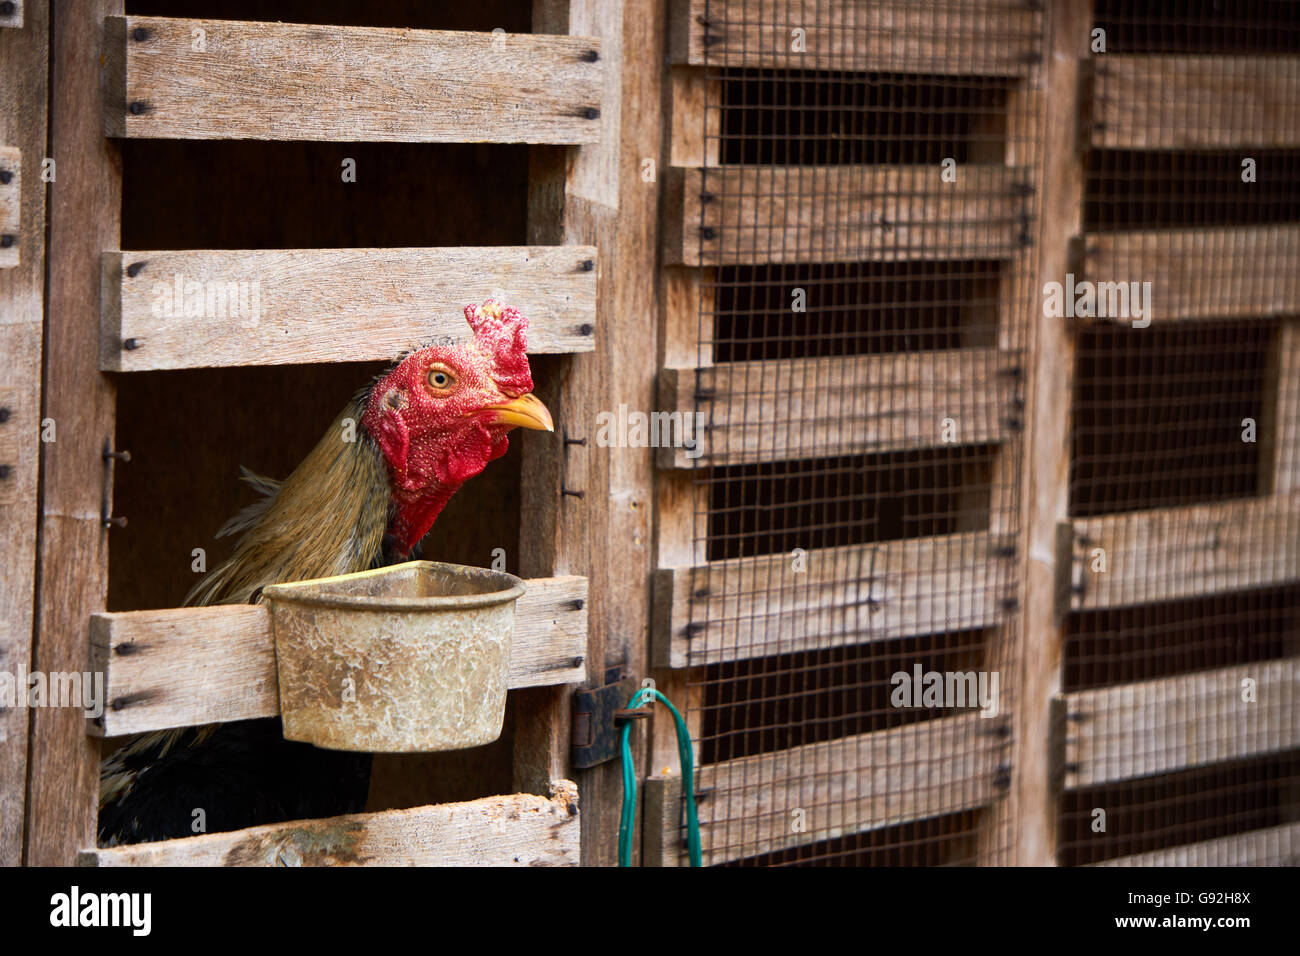 chicken farm cage Stock Photo